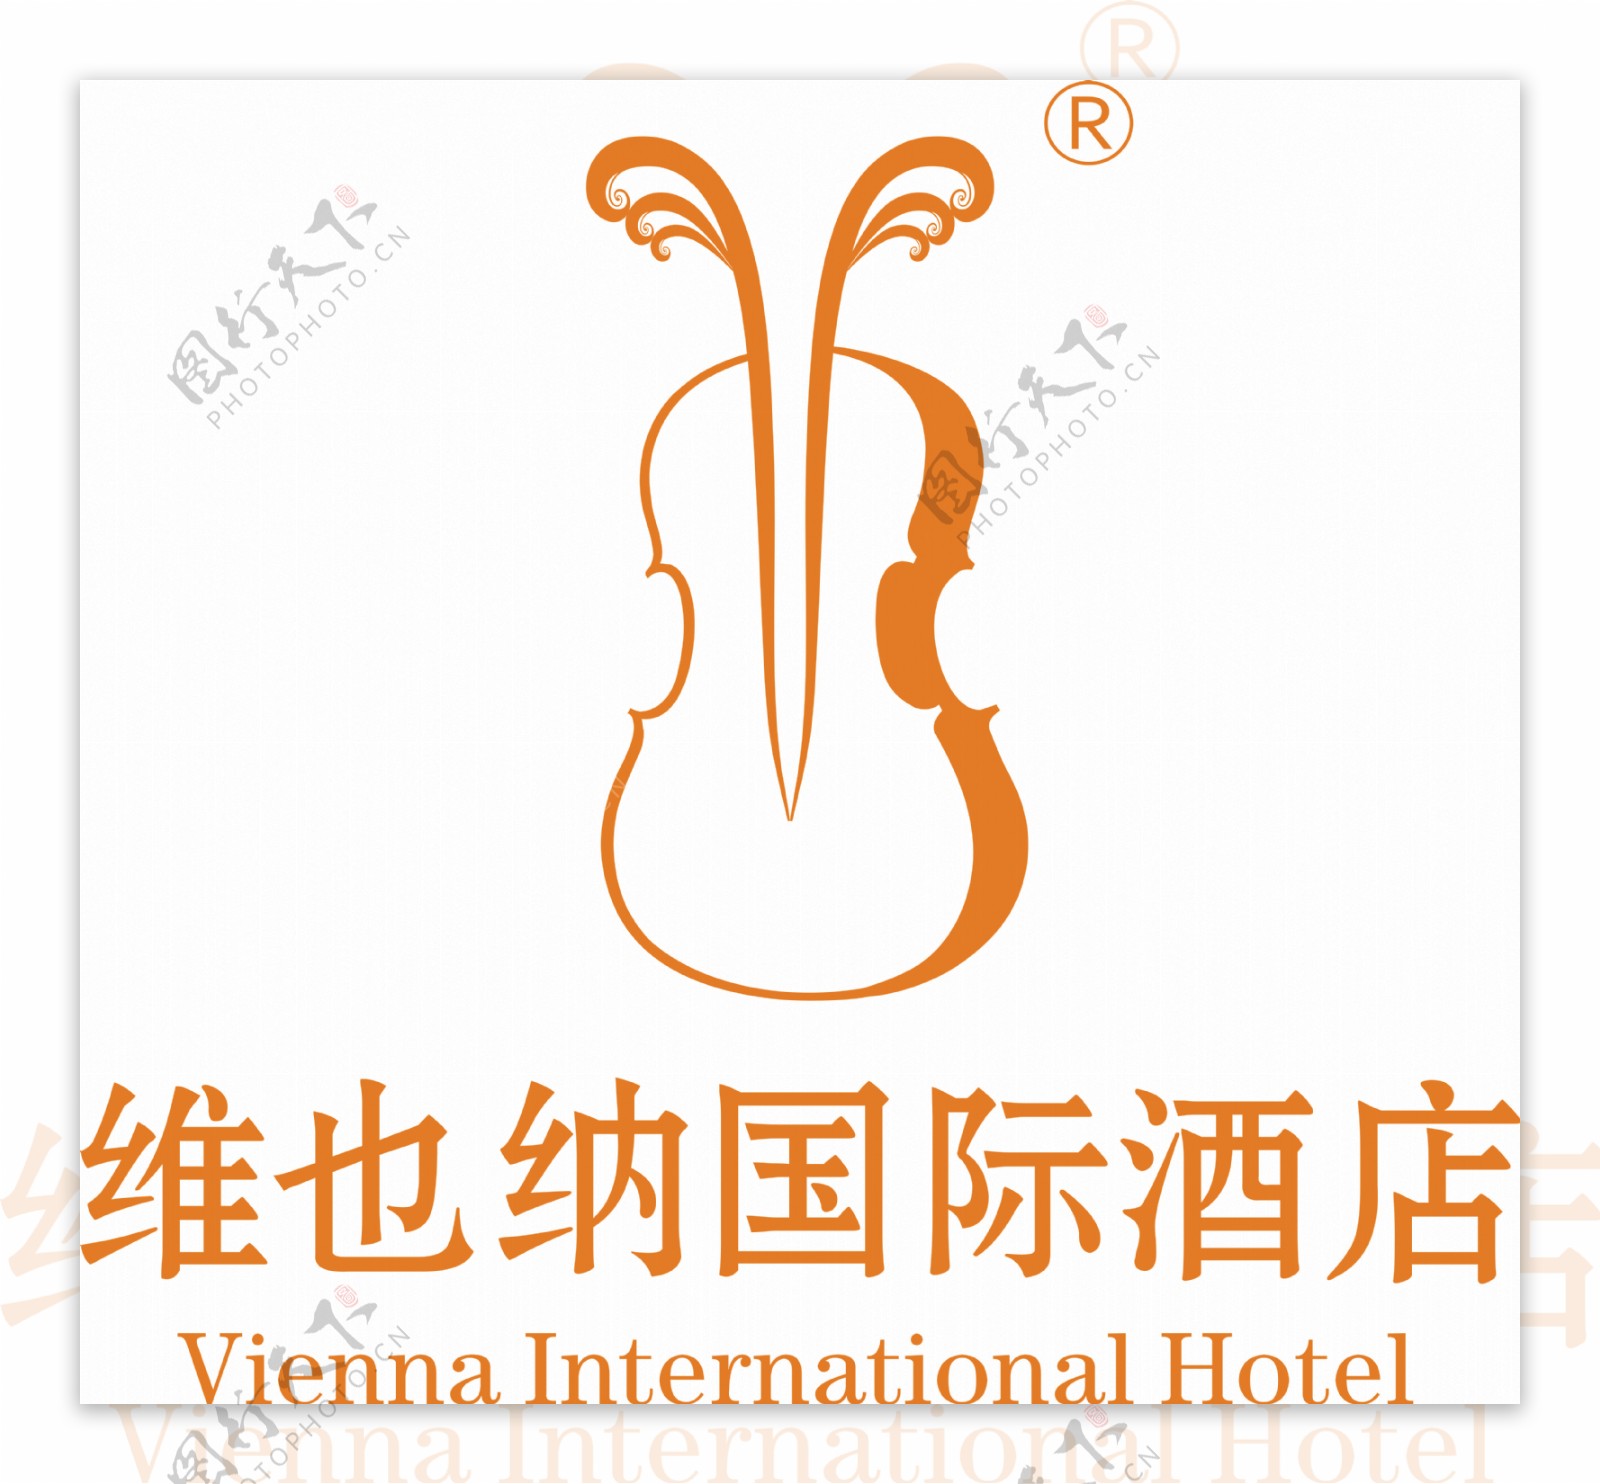 维也纳国际酒店标志